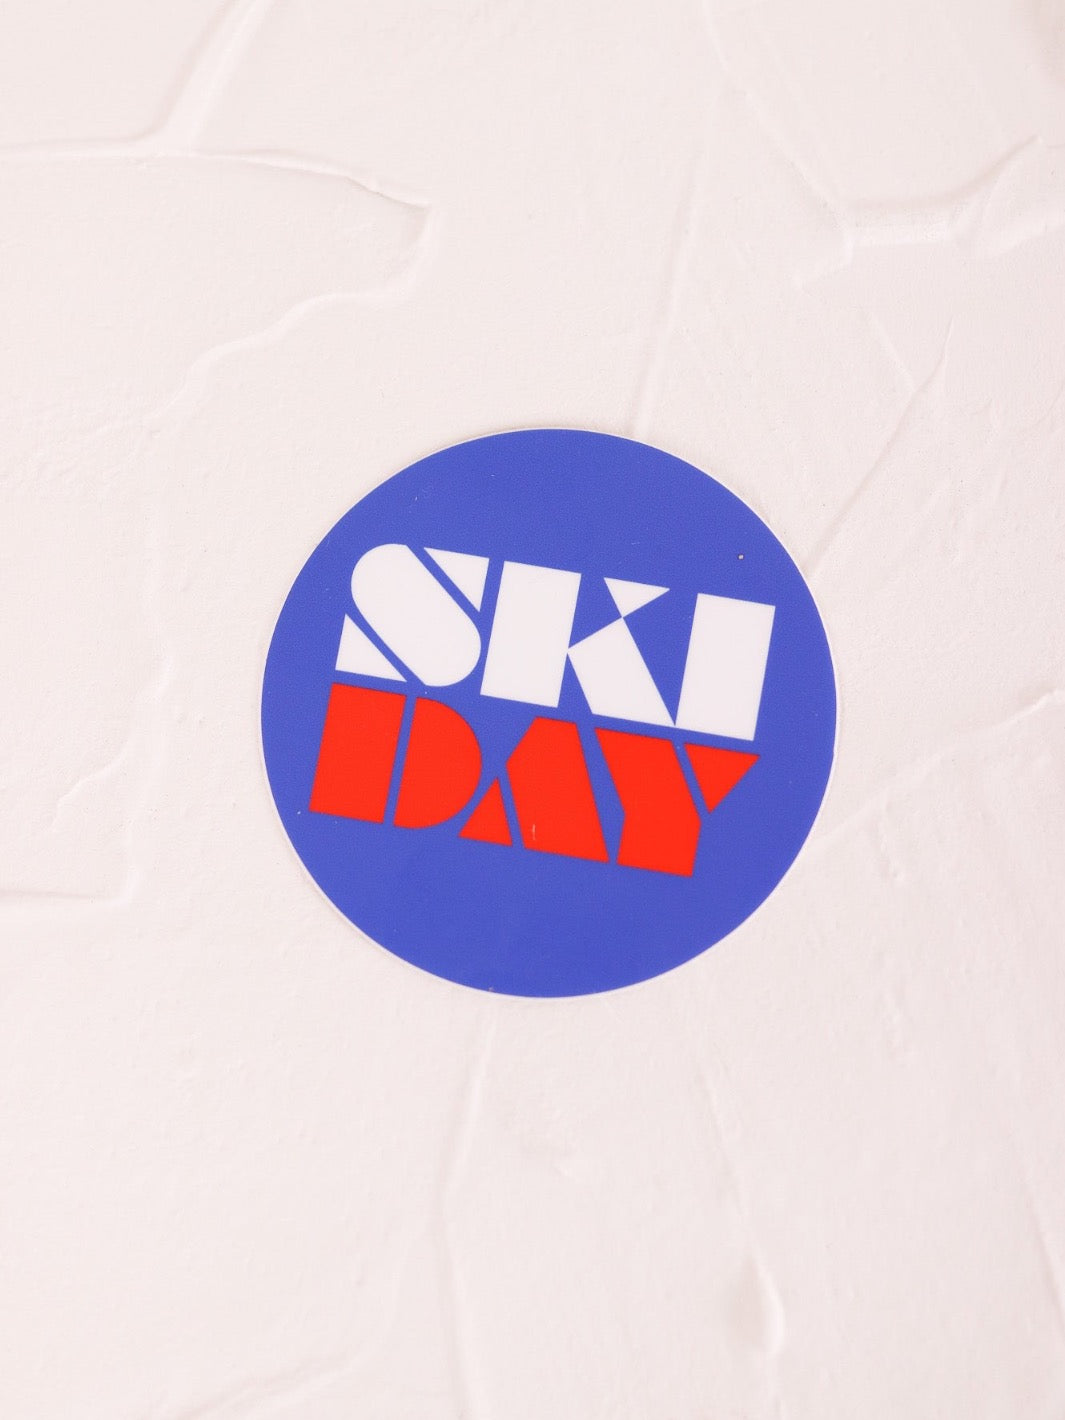 Ski Day Round Sticker - Heyday